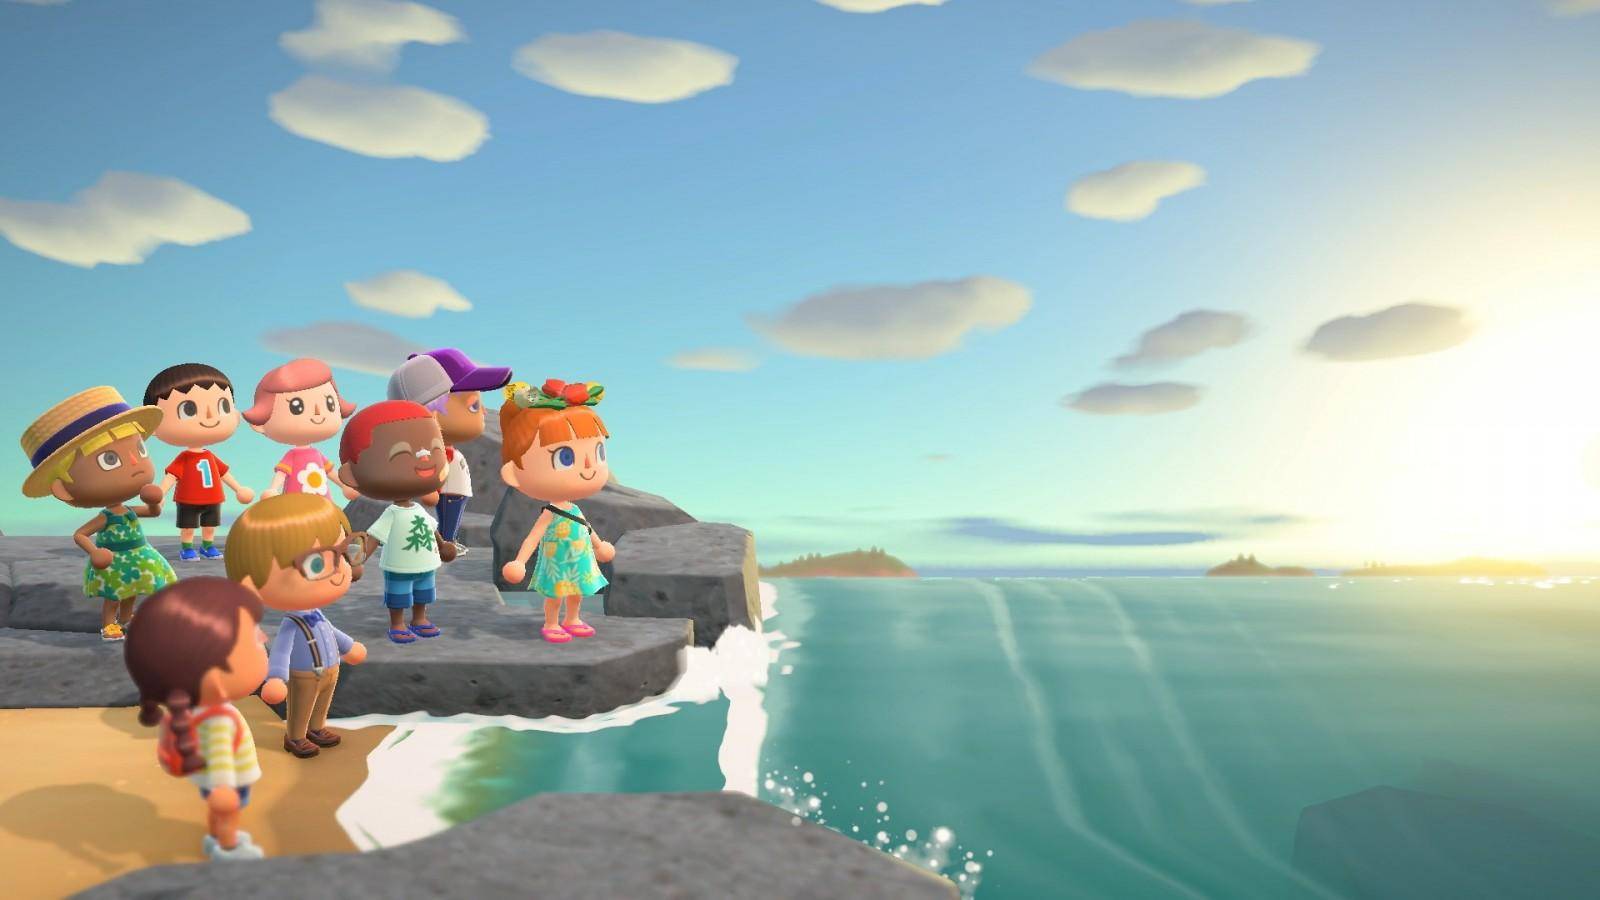 Animal Crossing fue lanzado en marzo de 2020 y gracias a su gameplay ha logrado ofrecer grandes cantidades de entretenimiento a la comunidad 